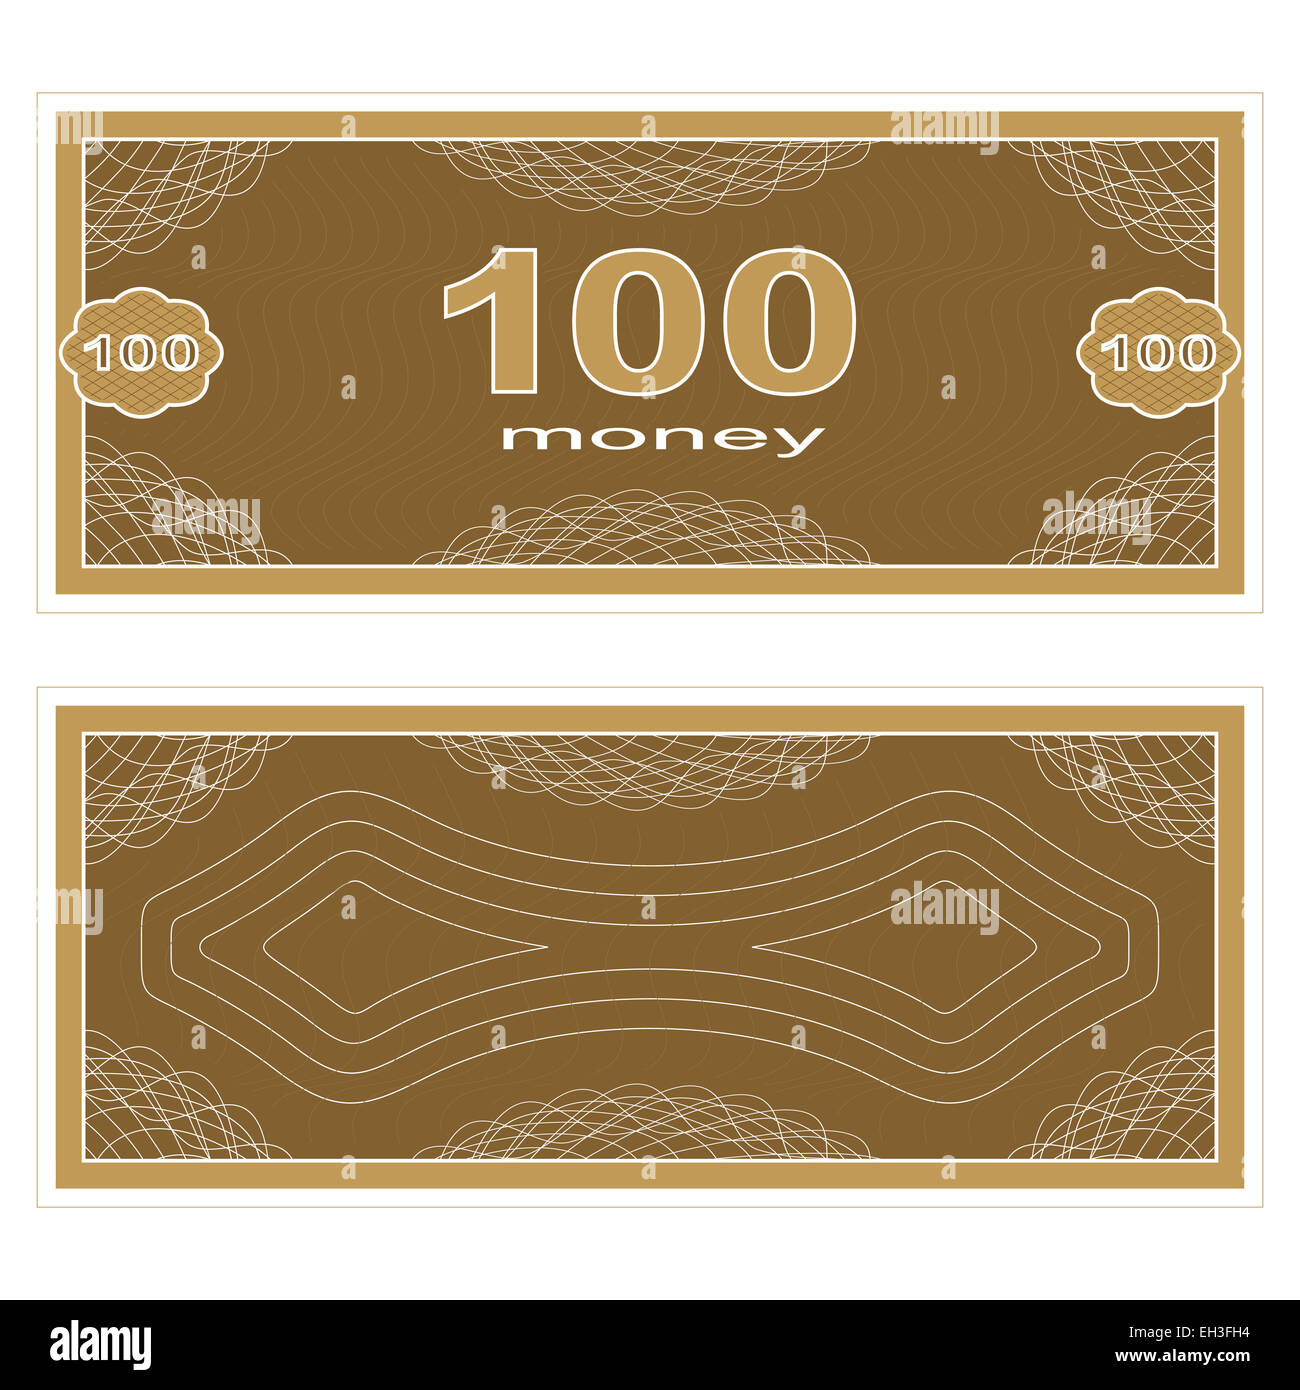 Play money. One Hundred Stock Photo